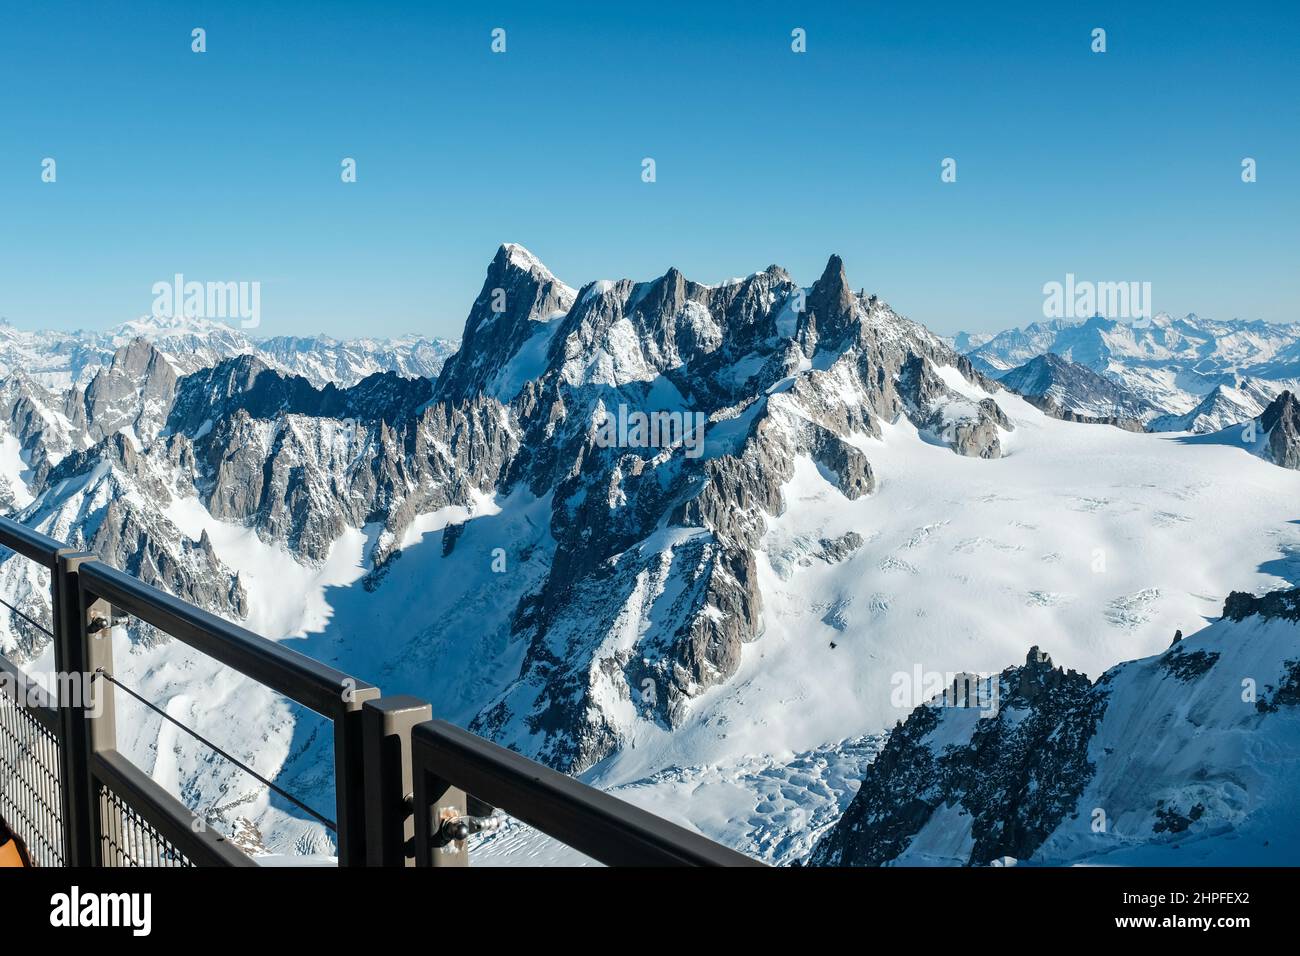 Vallee Blanche und Berge (Grandes Jorasses, etc.) von der Aiguille du Midi, Chamonix, Frankreich aus gesehen Stockfoto